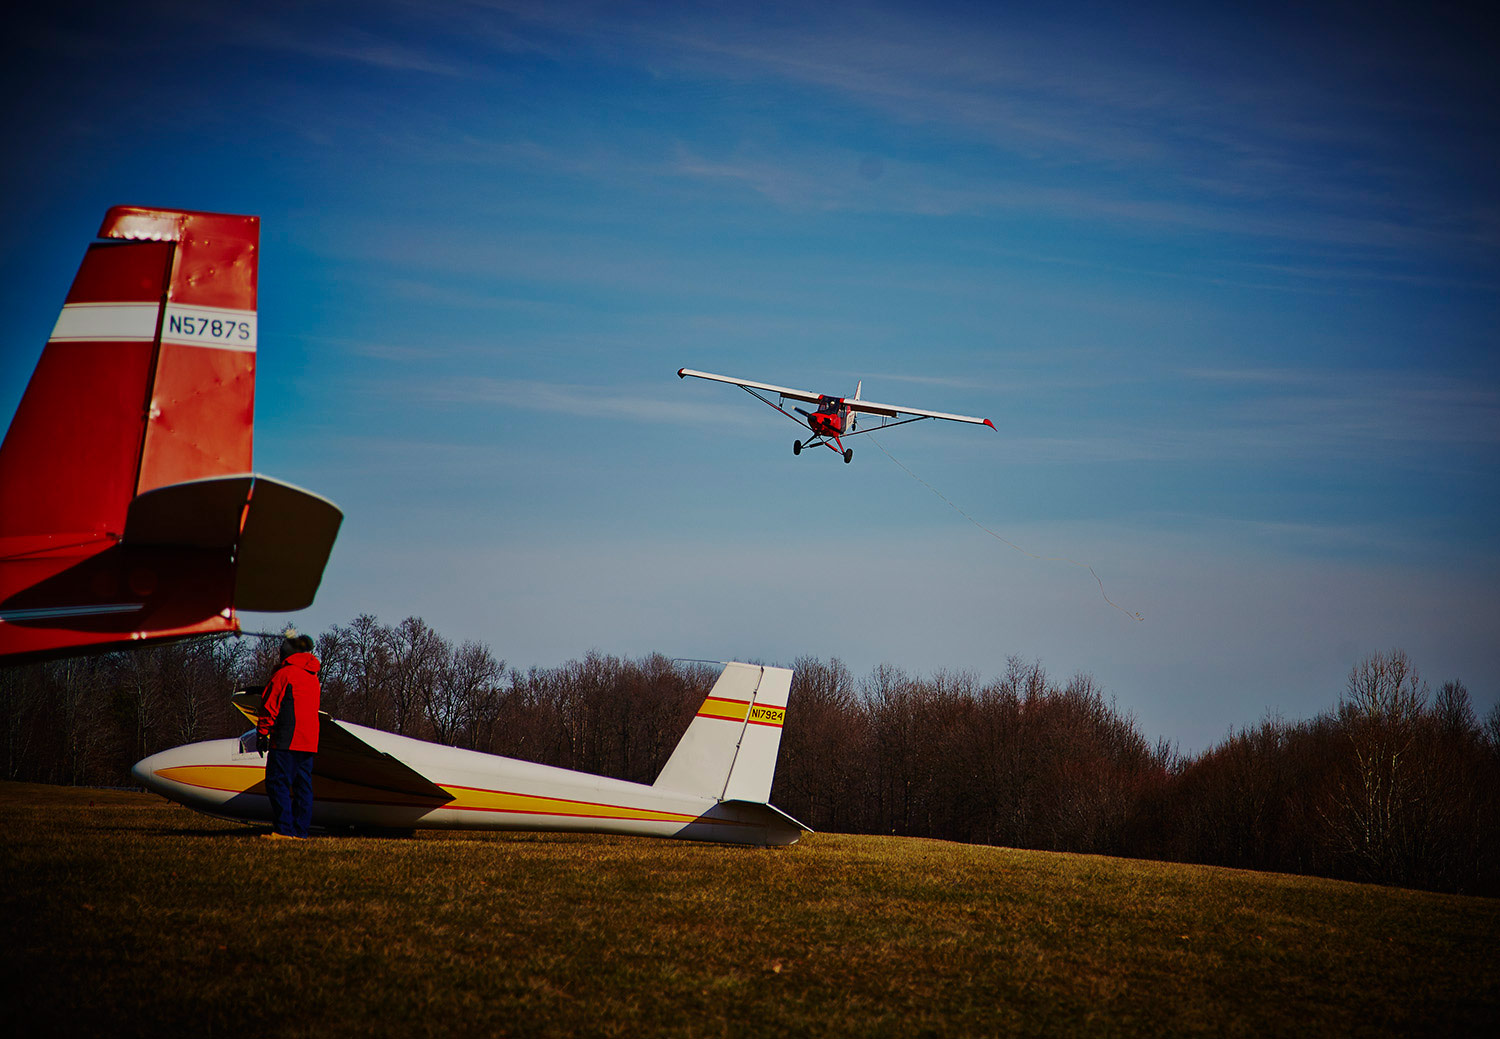 crosswind landing photography ©2014 bret wills